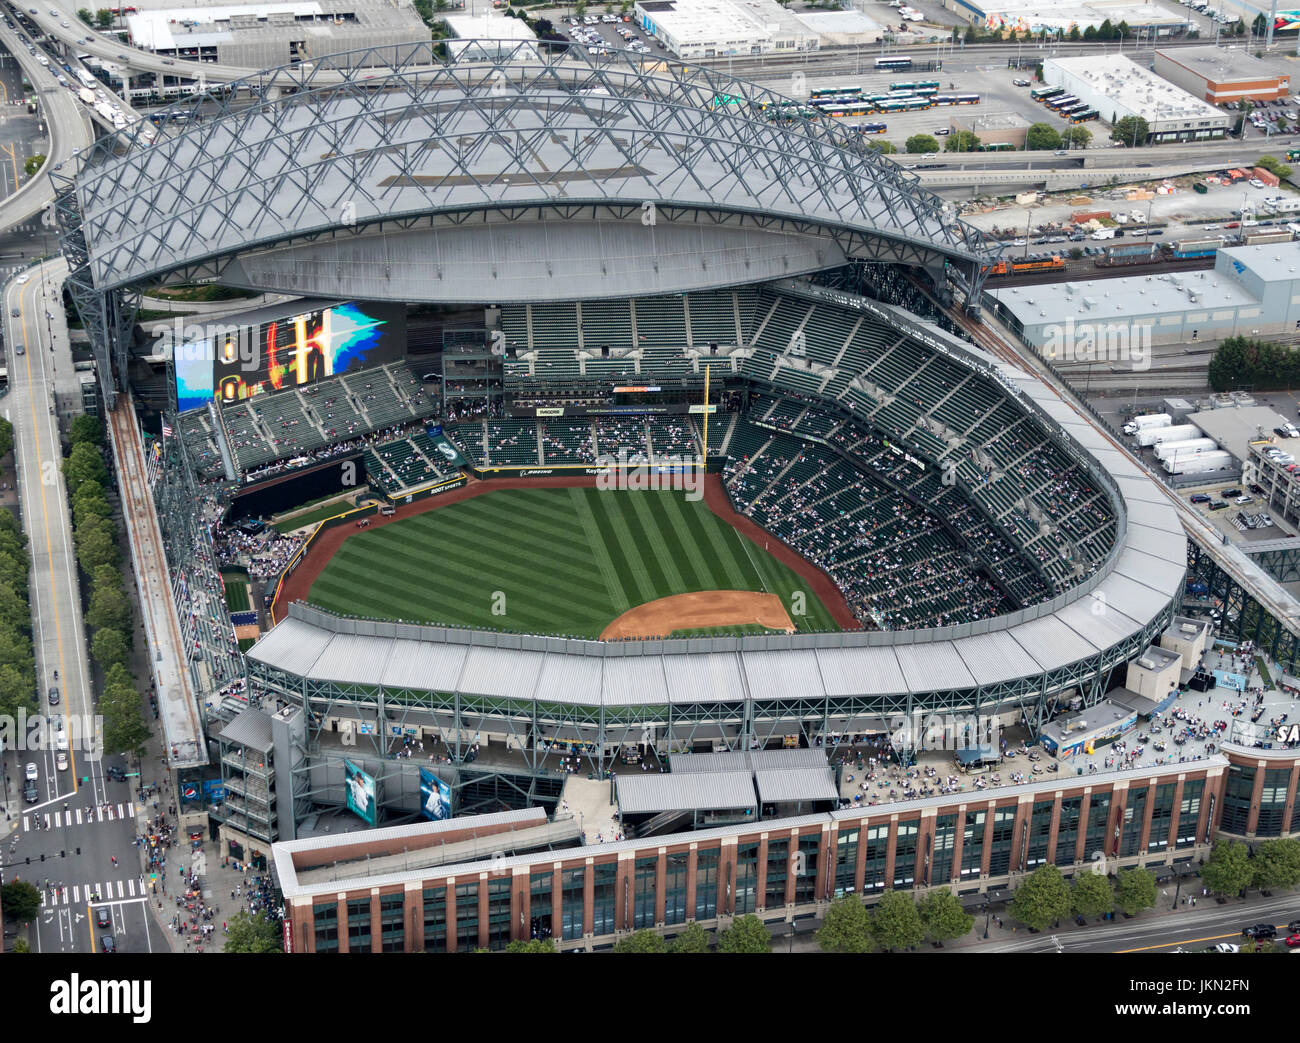 Vista aérea del techo escamoteable Safeco Field, el estadio de béisbol de Seattle, Washington, EE.UU. Foto de stock